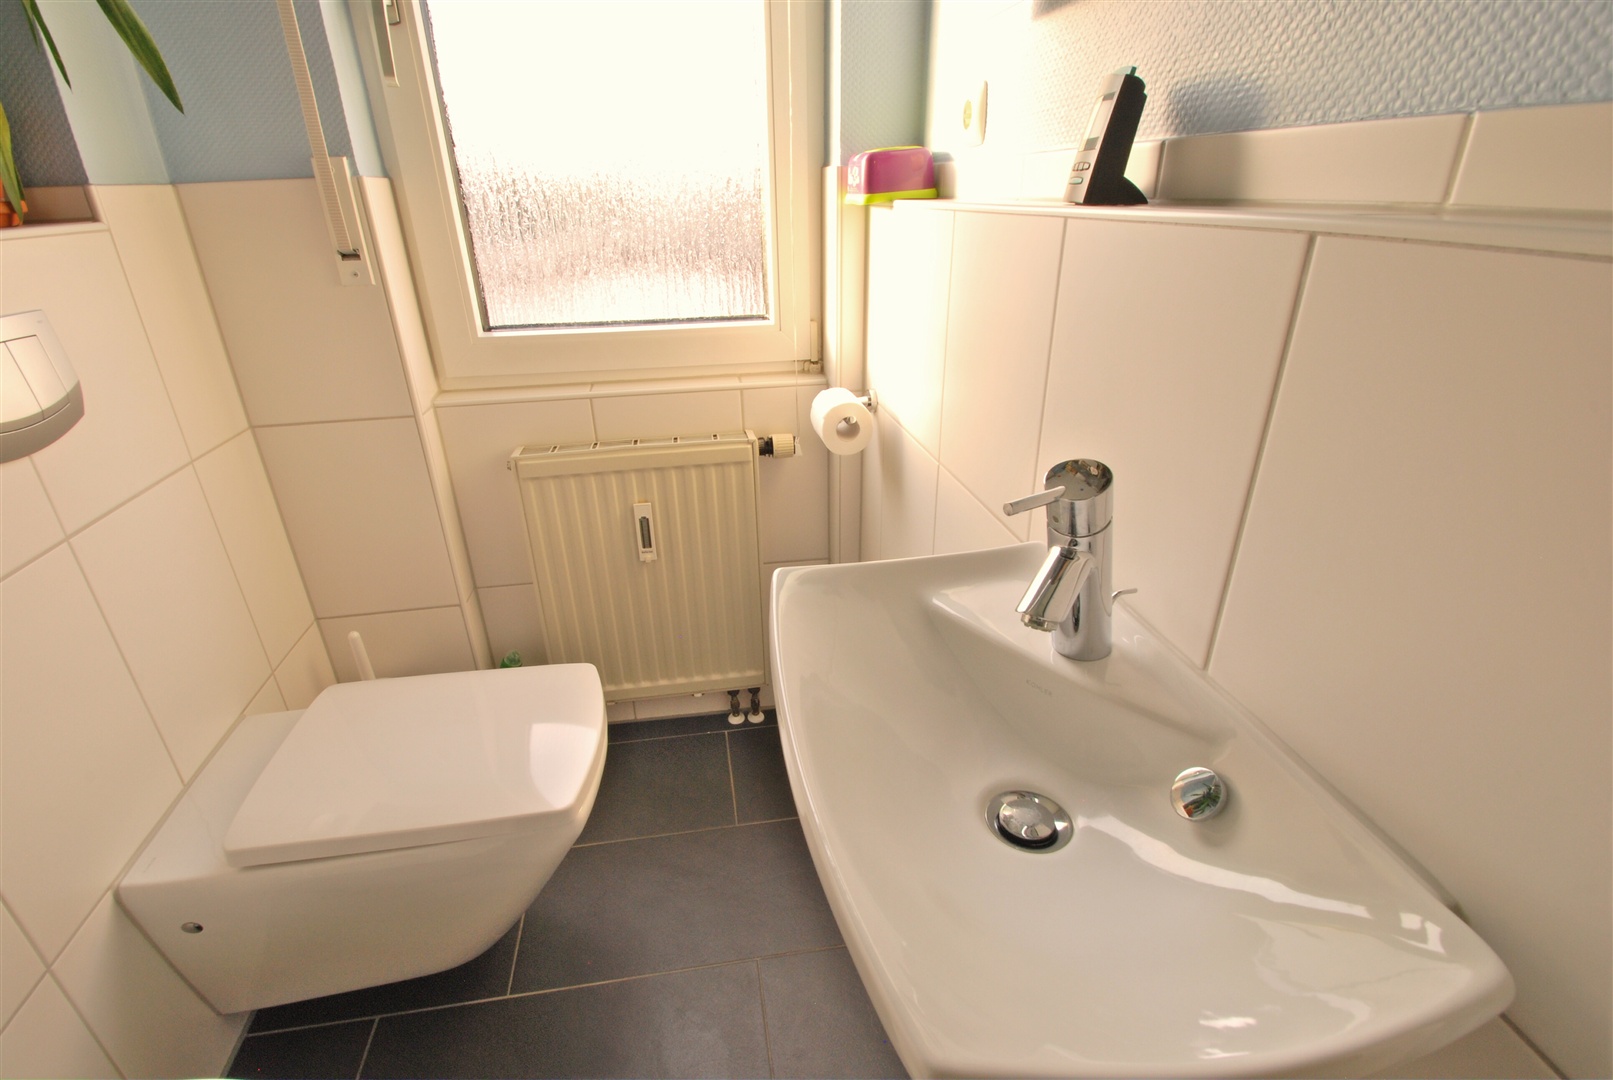 separates, saniertes wc mit platz für die waschmaschine - Oliver Reifferscheid - Immobilienmakler Darmstadt